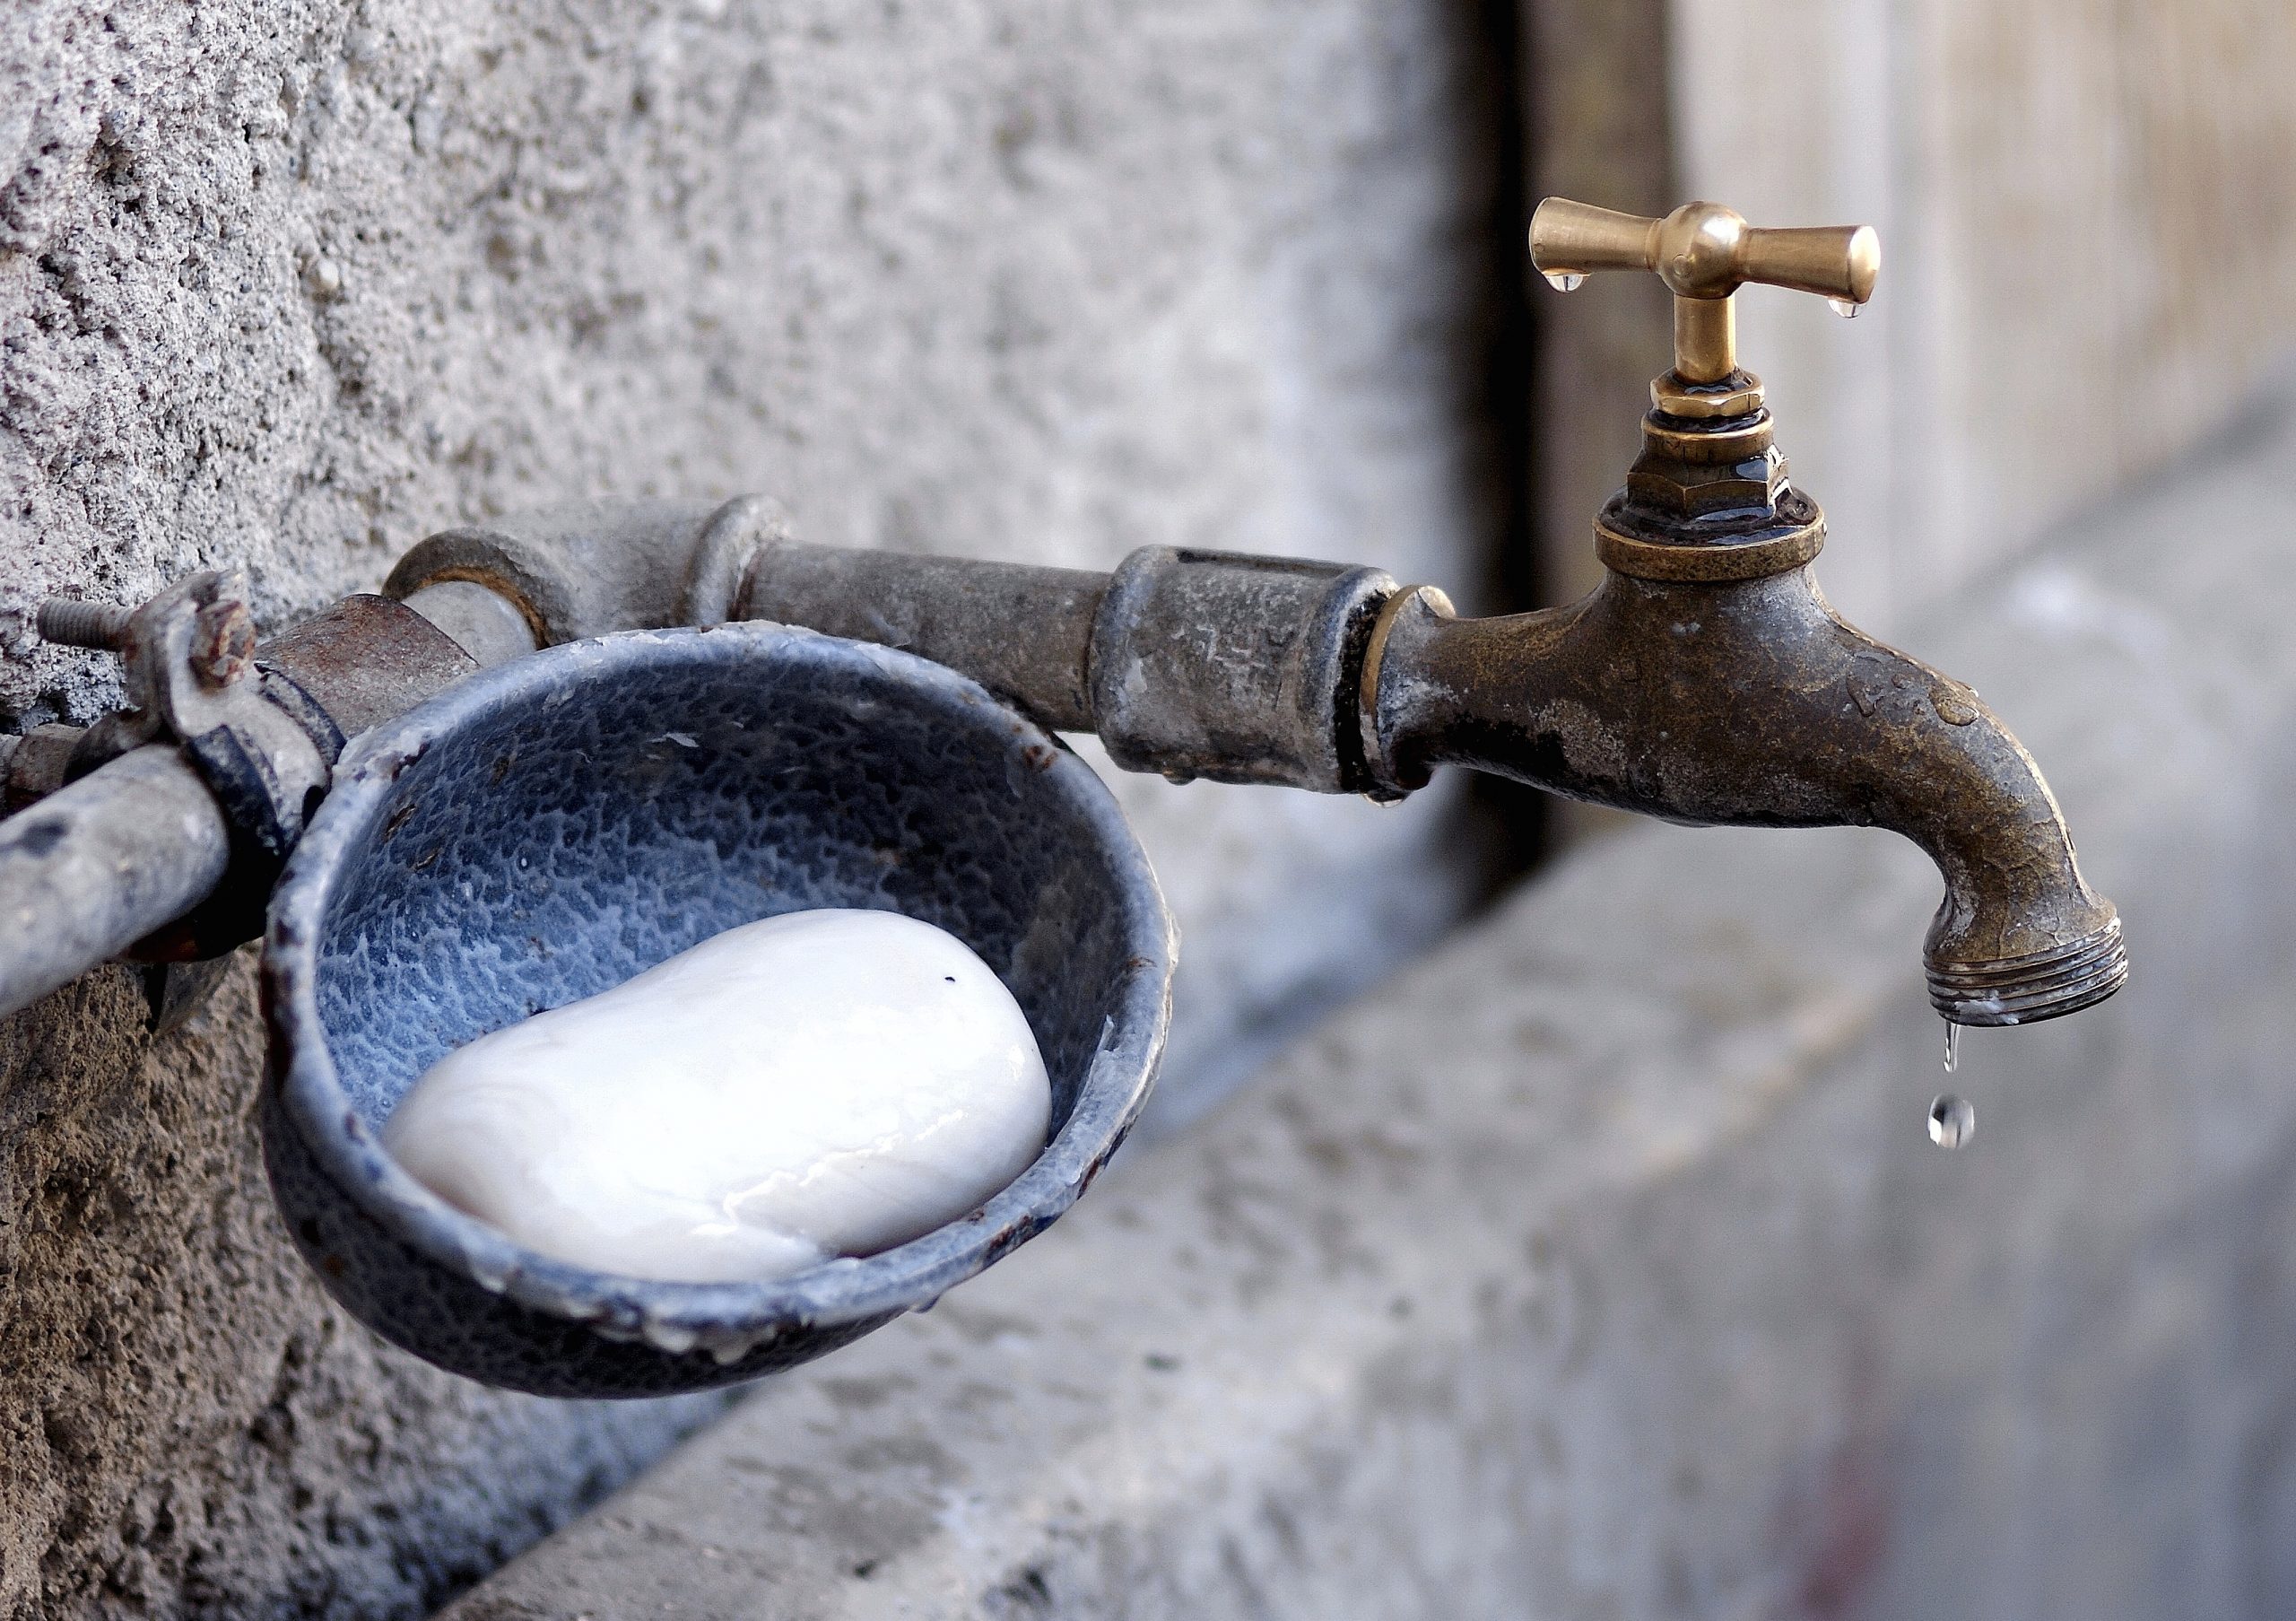 Խանջյան համայնքի 9 բնակիչ հայտարարել էր, որ թունավորվել է խմելու ջրից. քրեական գործ է հարուցվել 